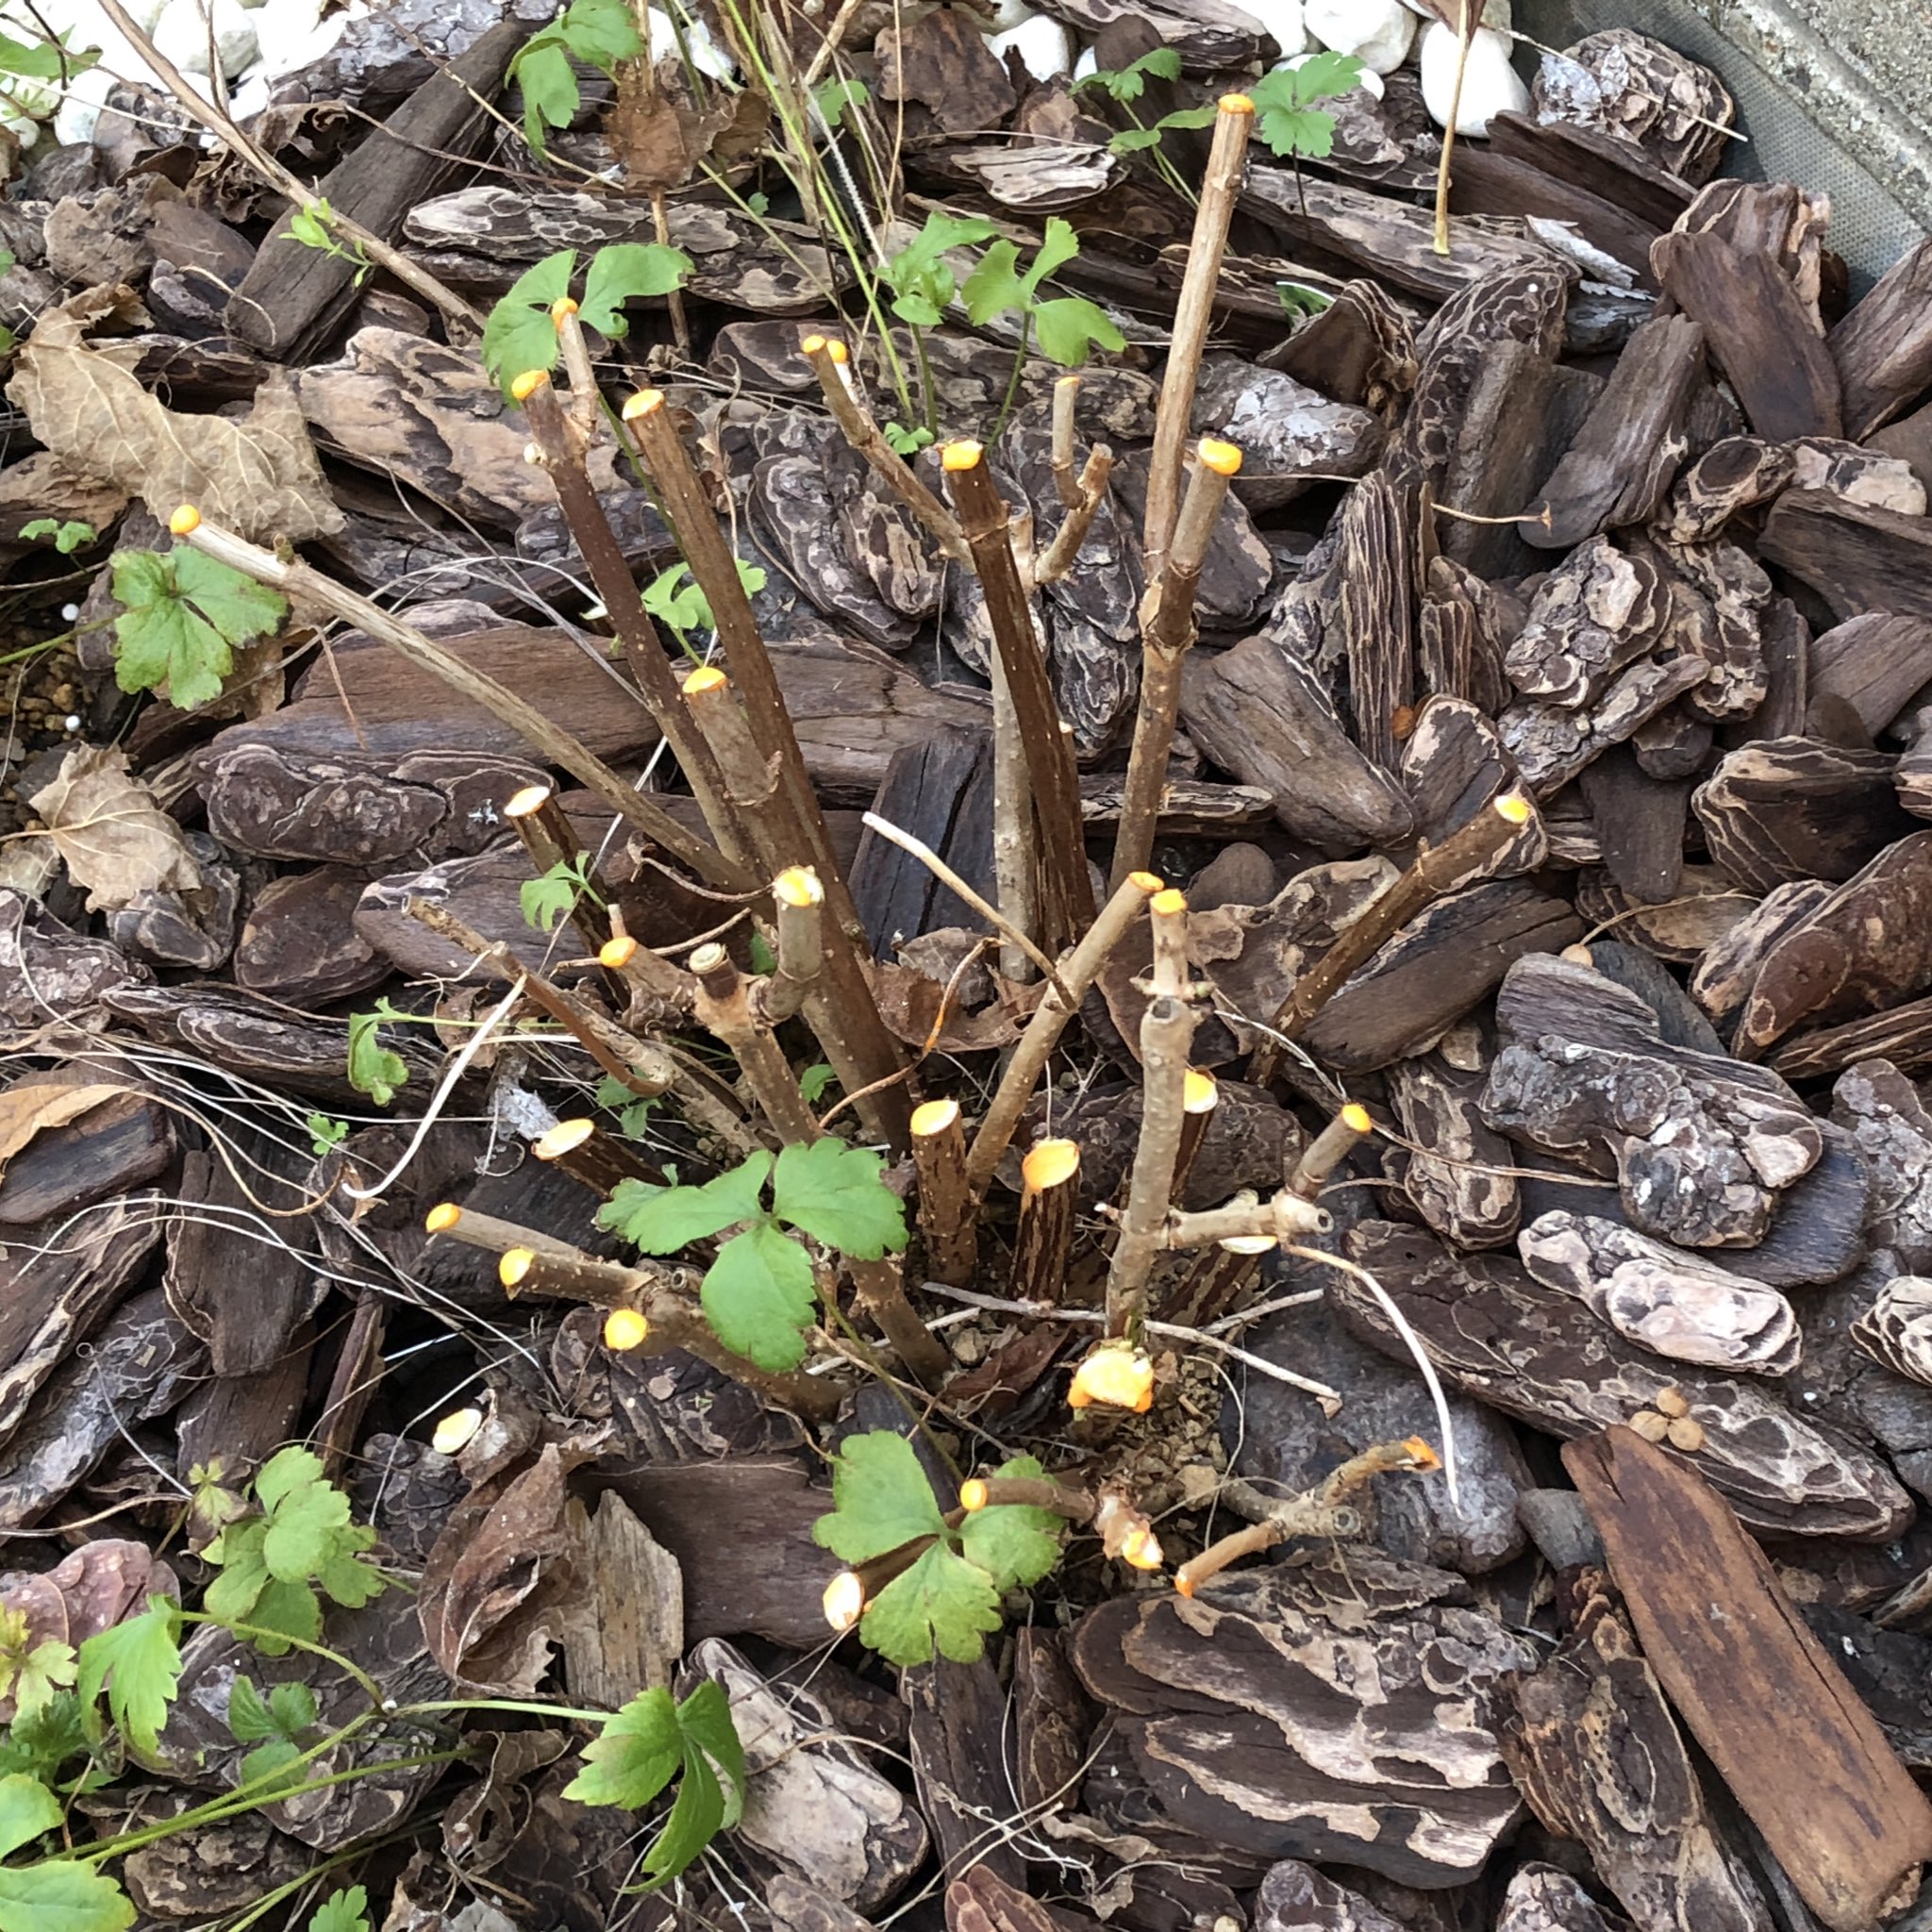 風織 庭いじりメモ アジサイ アナベル 葉を広げ始めました 地際の小さな枝からも新芽が出ています アナベルの木陰を頼りに植えた苗もあるため 一気に茂ってくれそうで頼もしいです T Co P5qqpivqmk Twitter